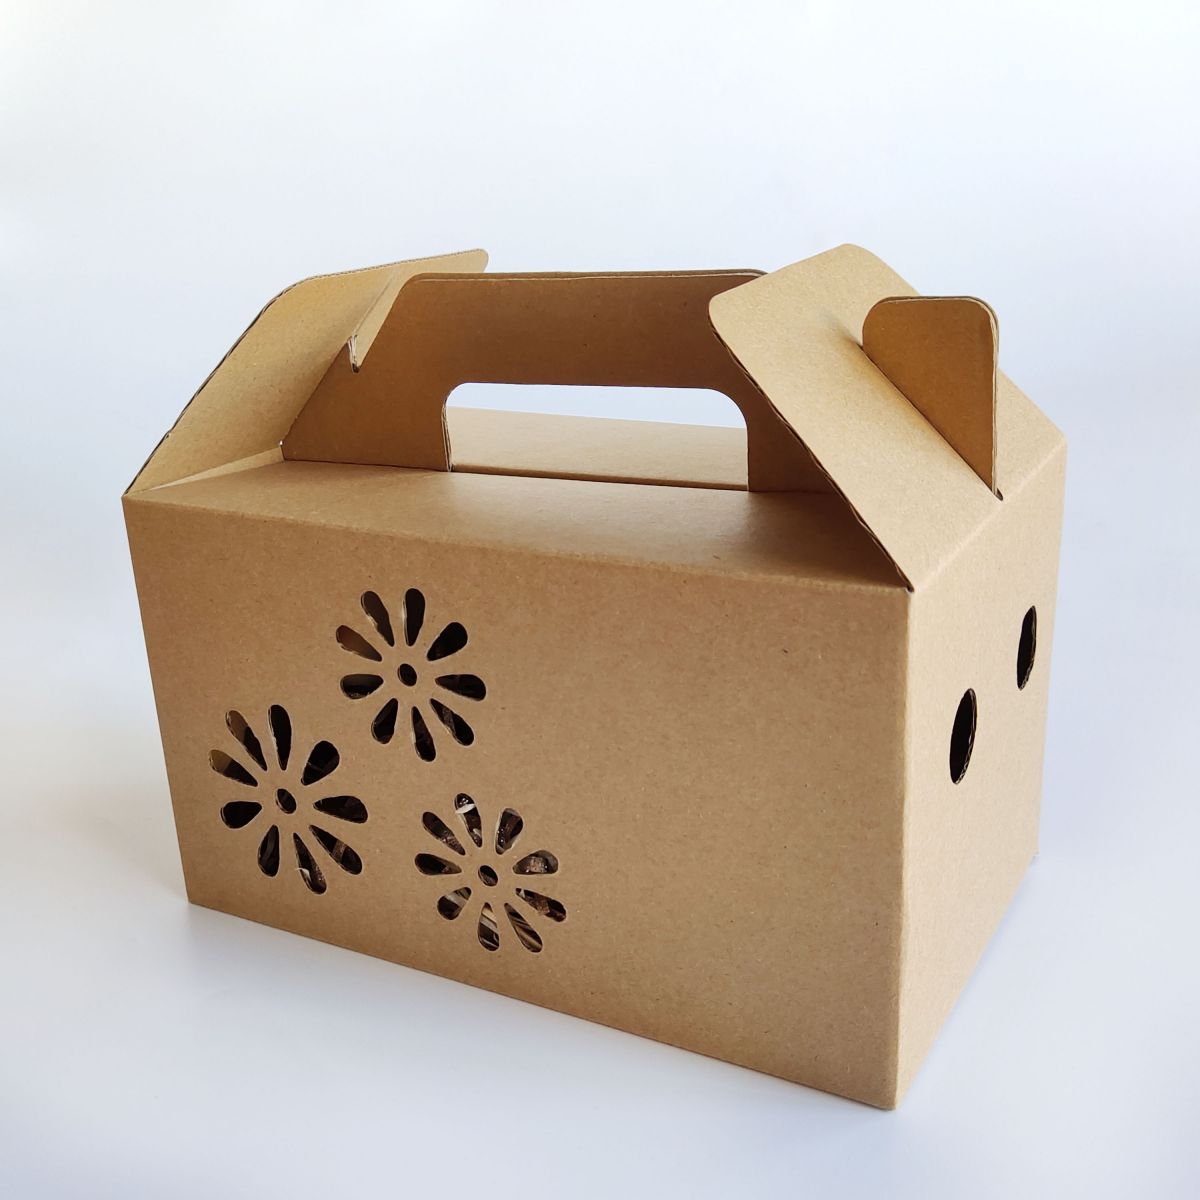 Packaging-Cardboard-Boxes.jpg